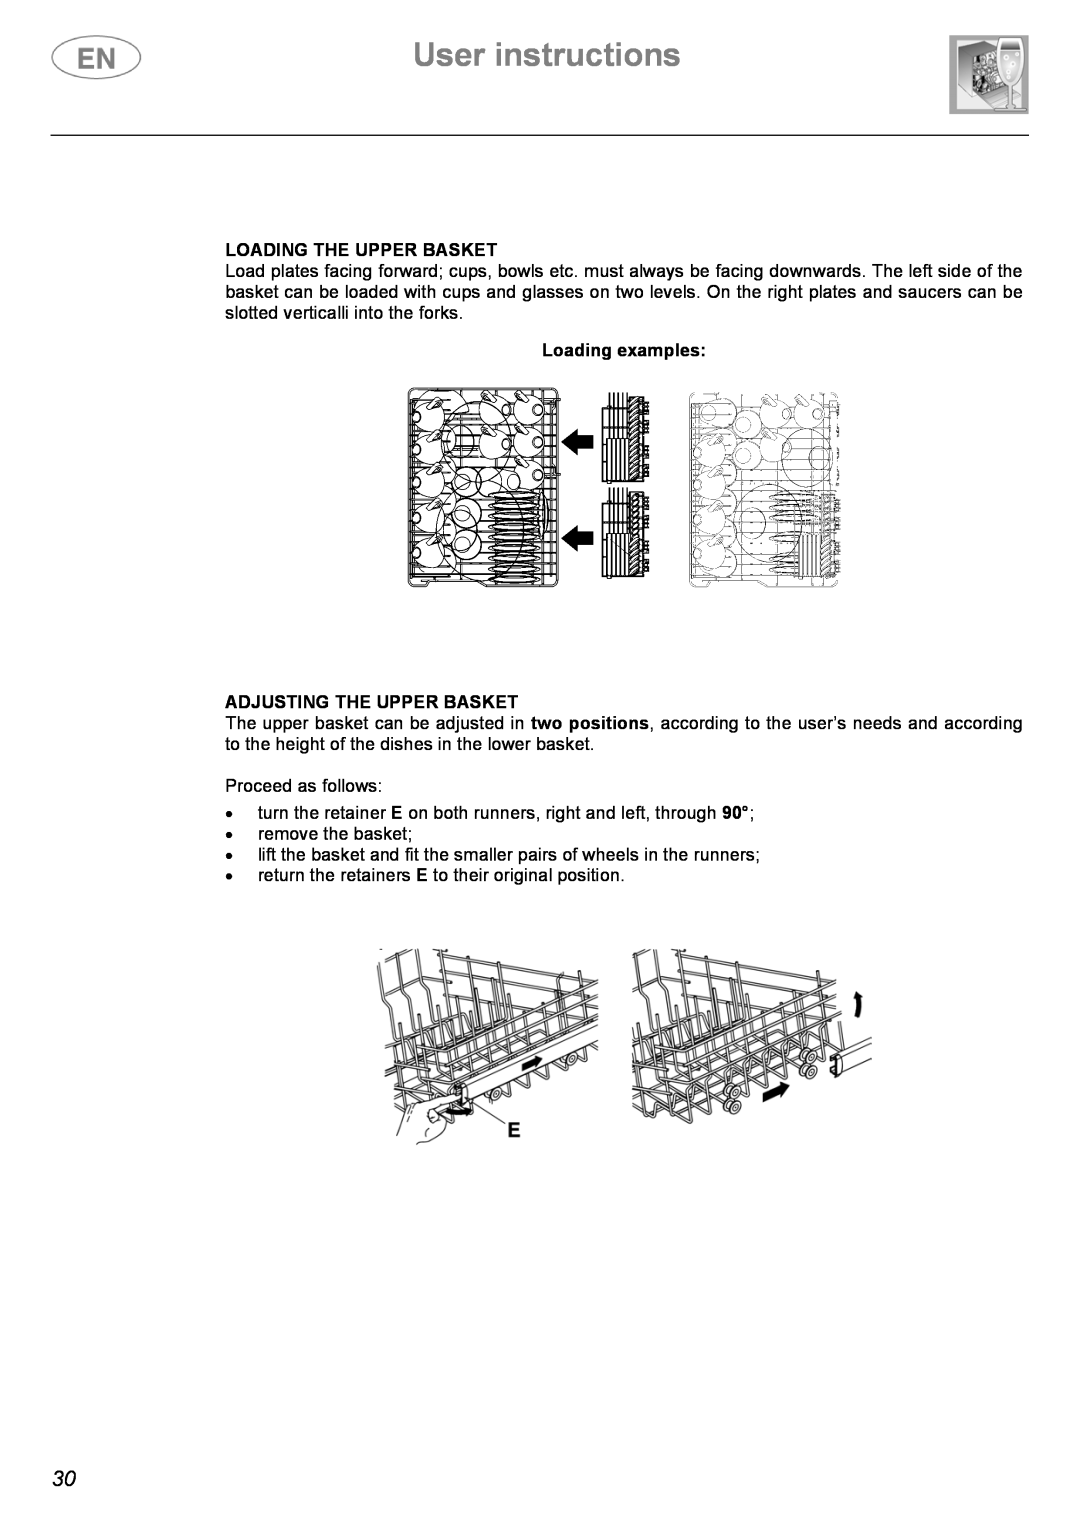 Smeg ST1108S instruction manual User instructions, Loading The Upper Basket, Loading examples ADJUSTING THE UPPER BASKET 